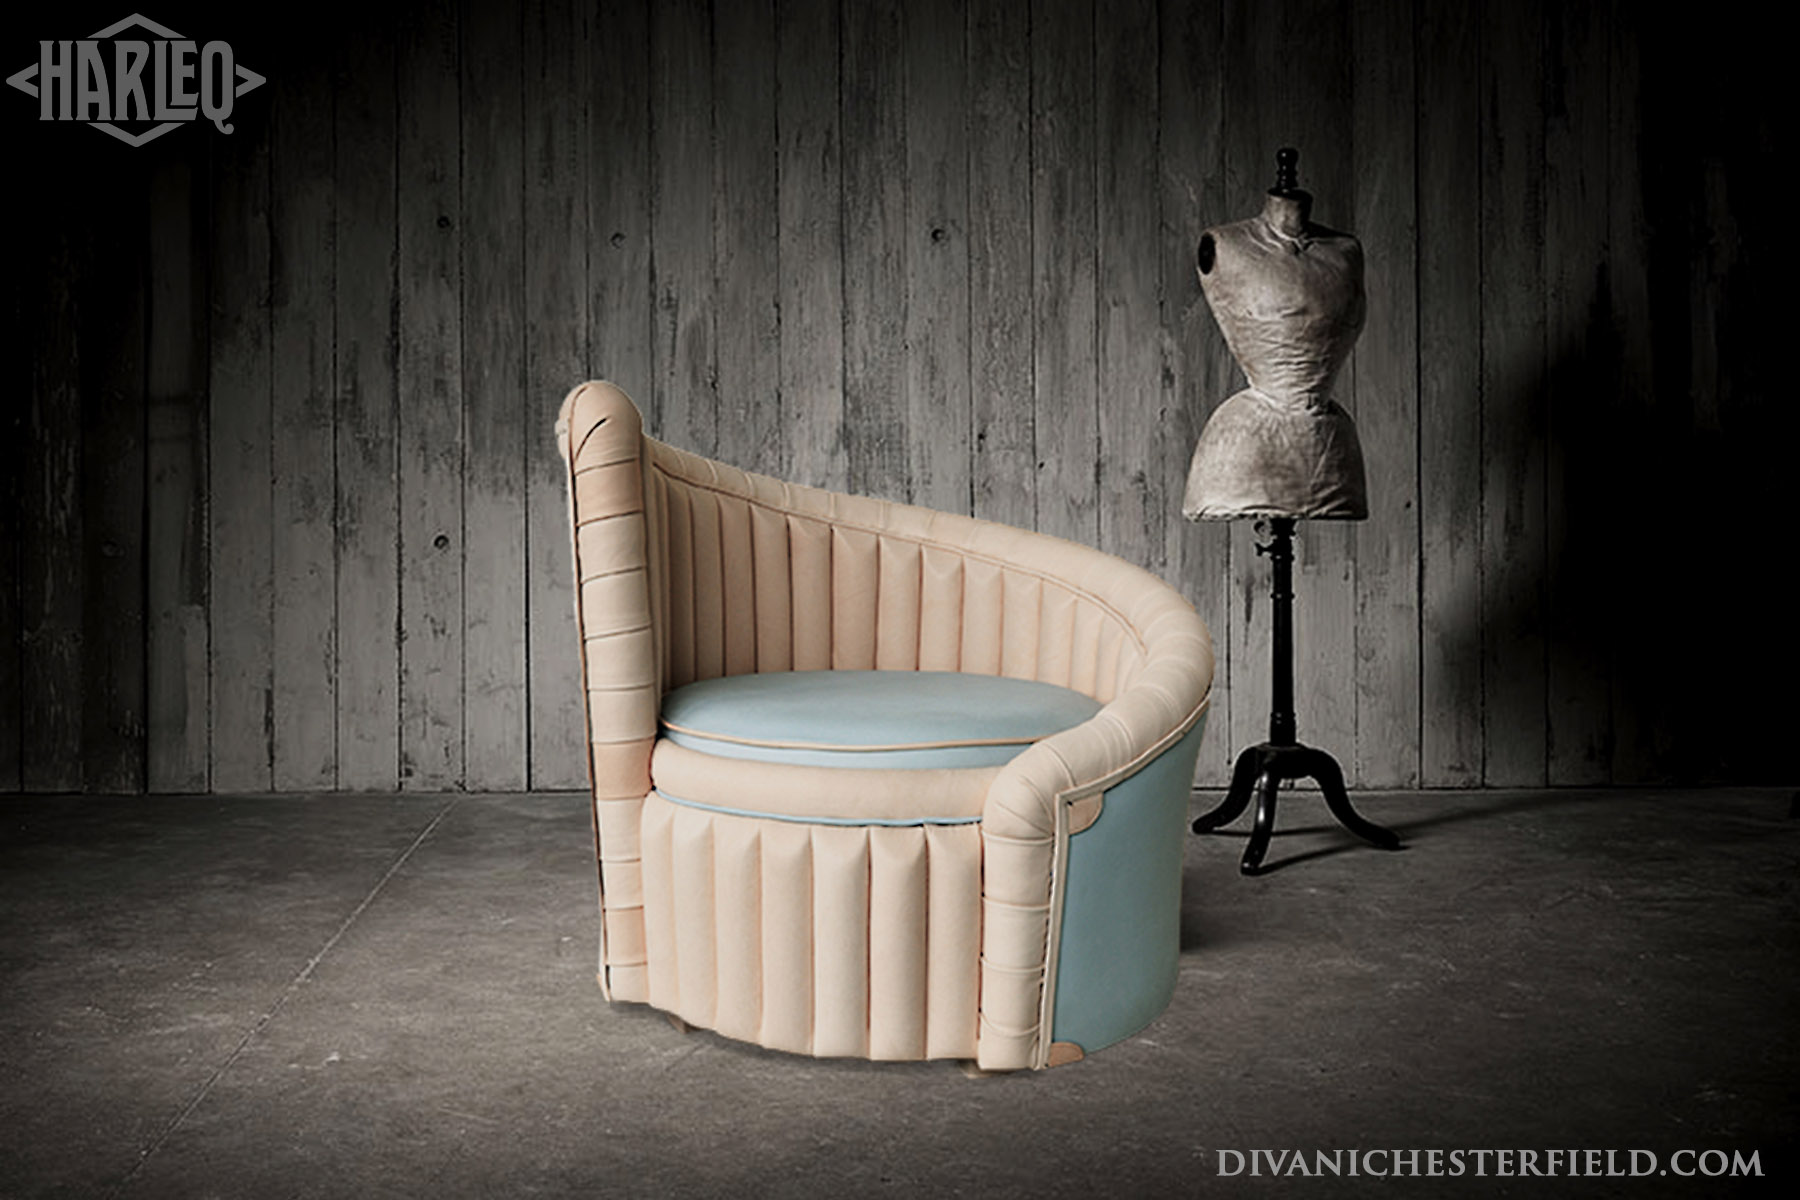 luxury-leather-chair-modern-design-harleq-twist